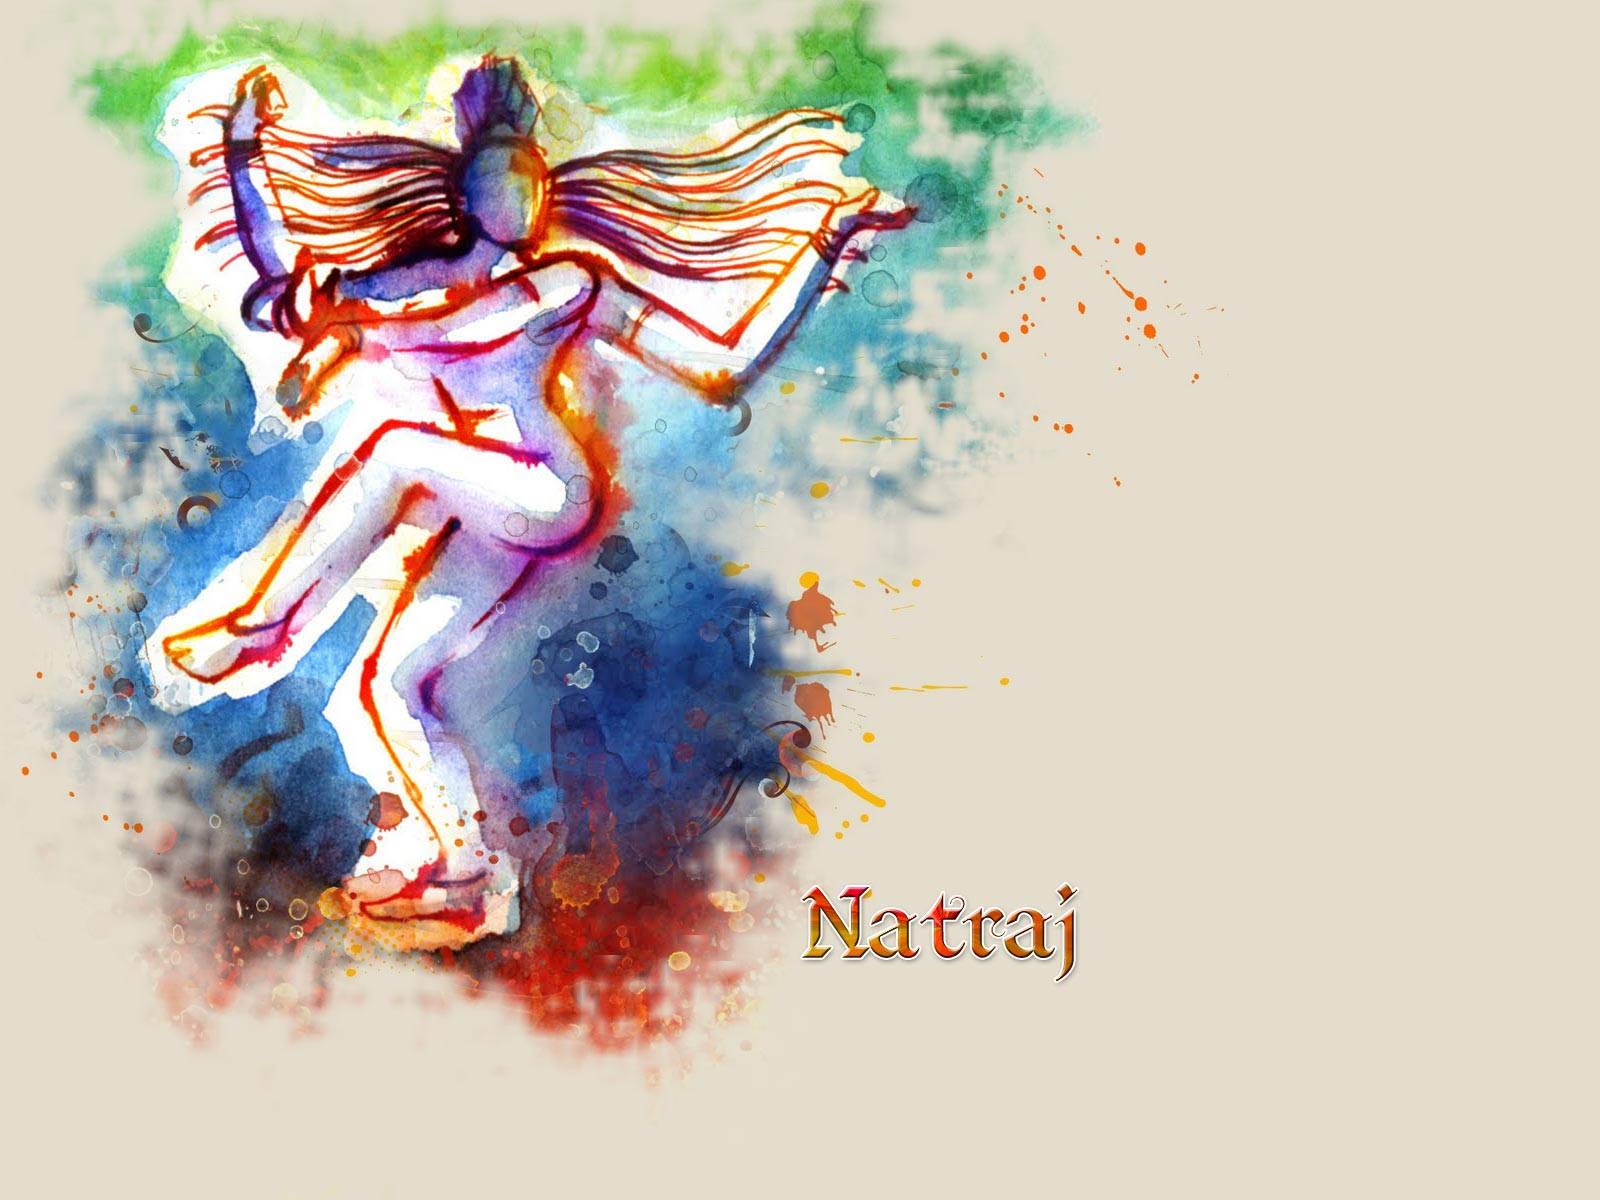 Shiva Nataraja Photos Download The BEST Free Shiva Nataraja Stock Photos  HD  Images